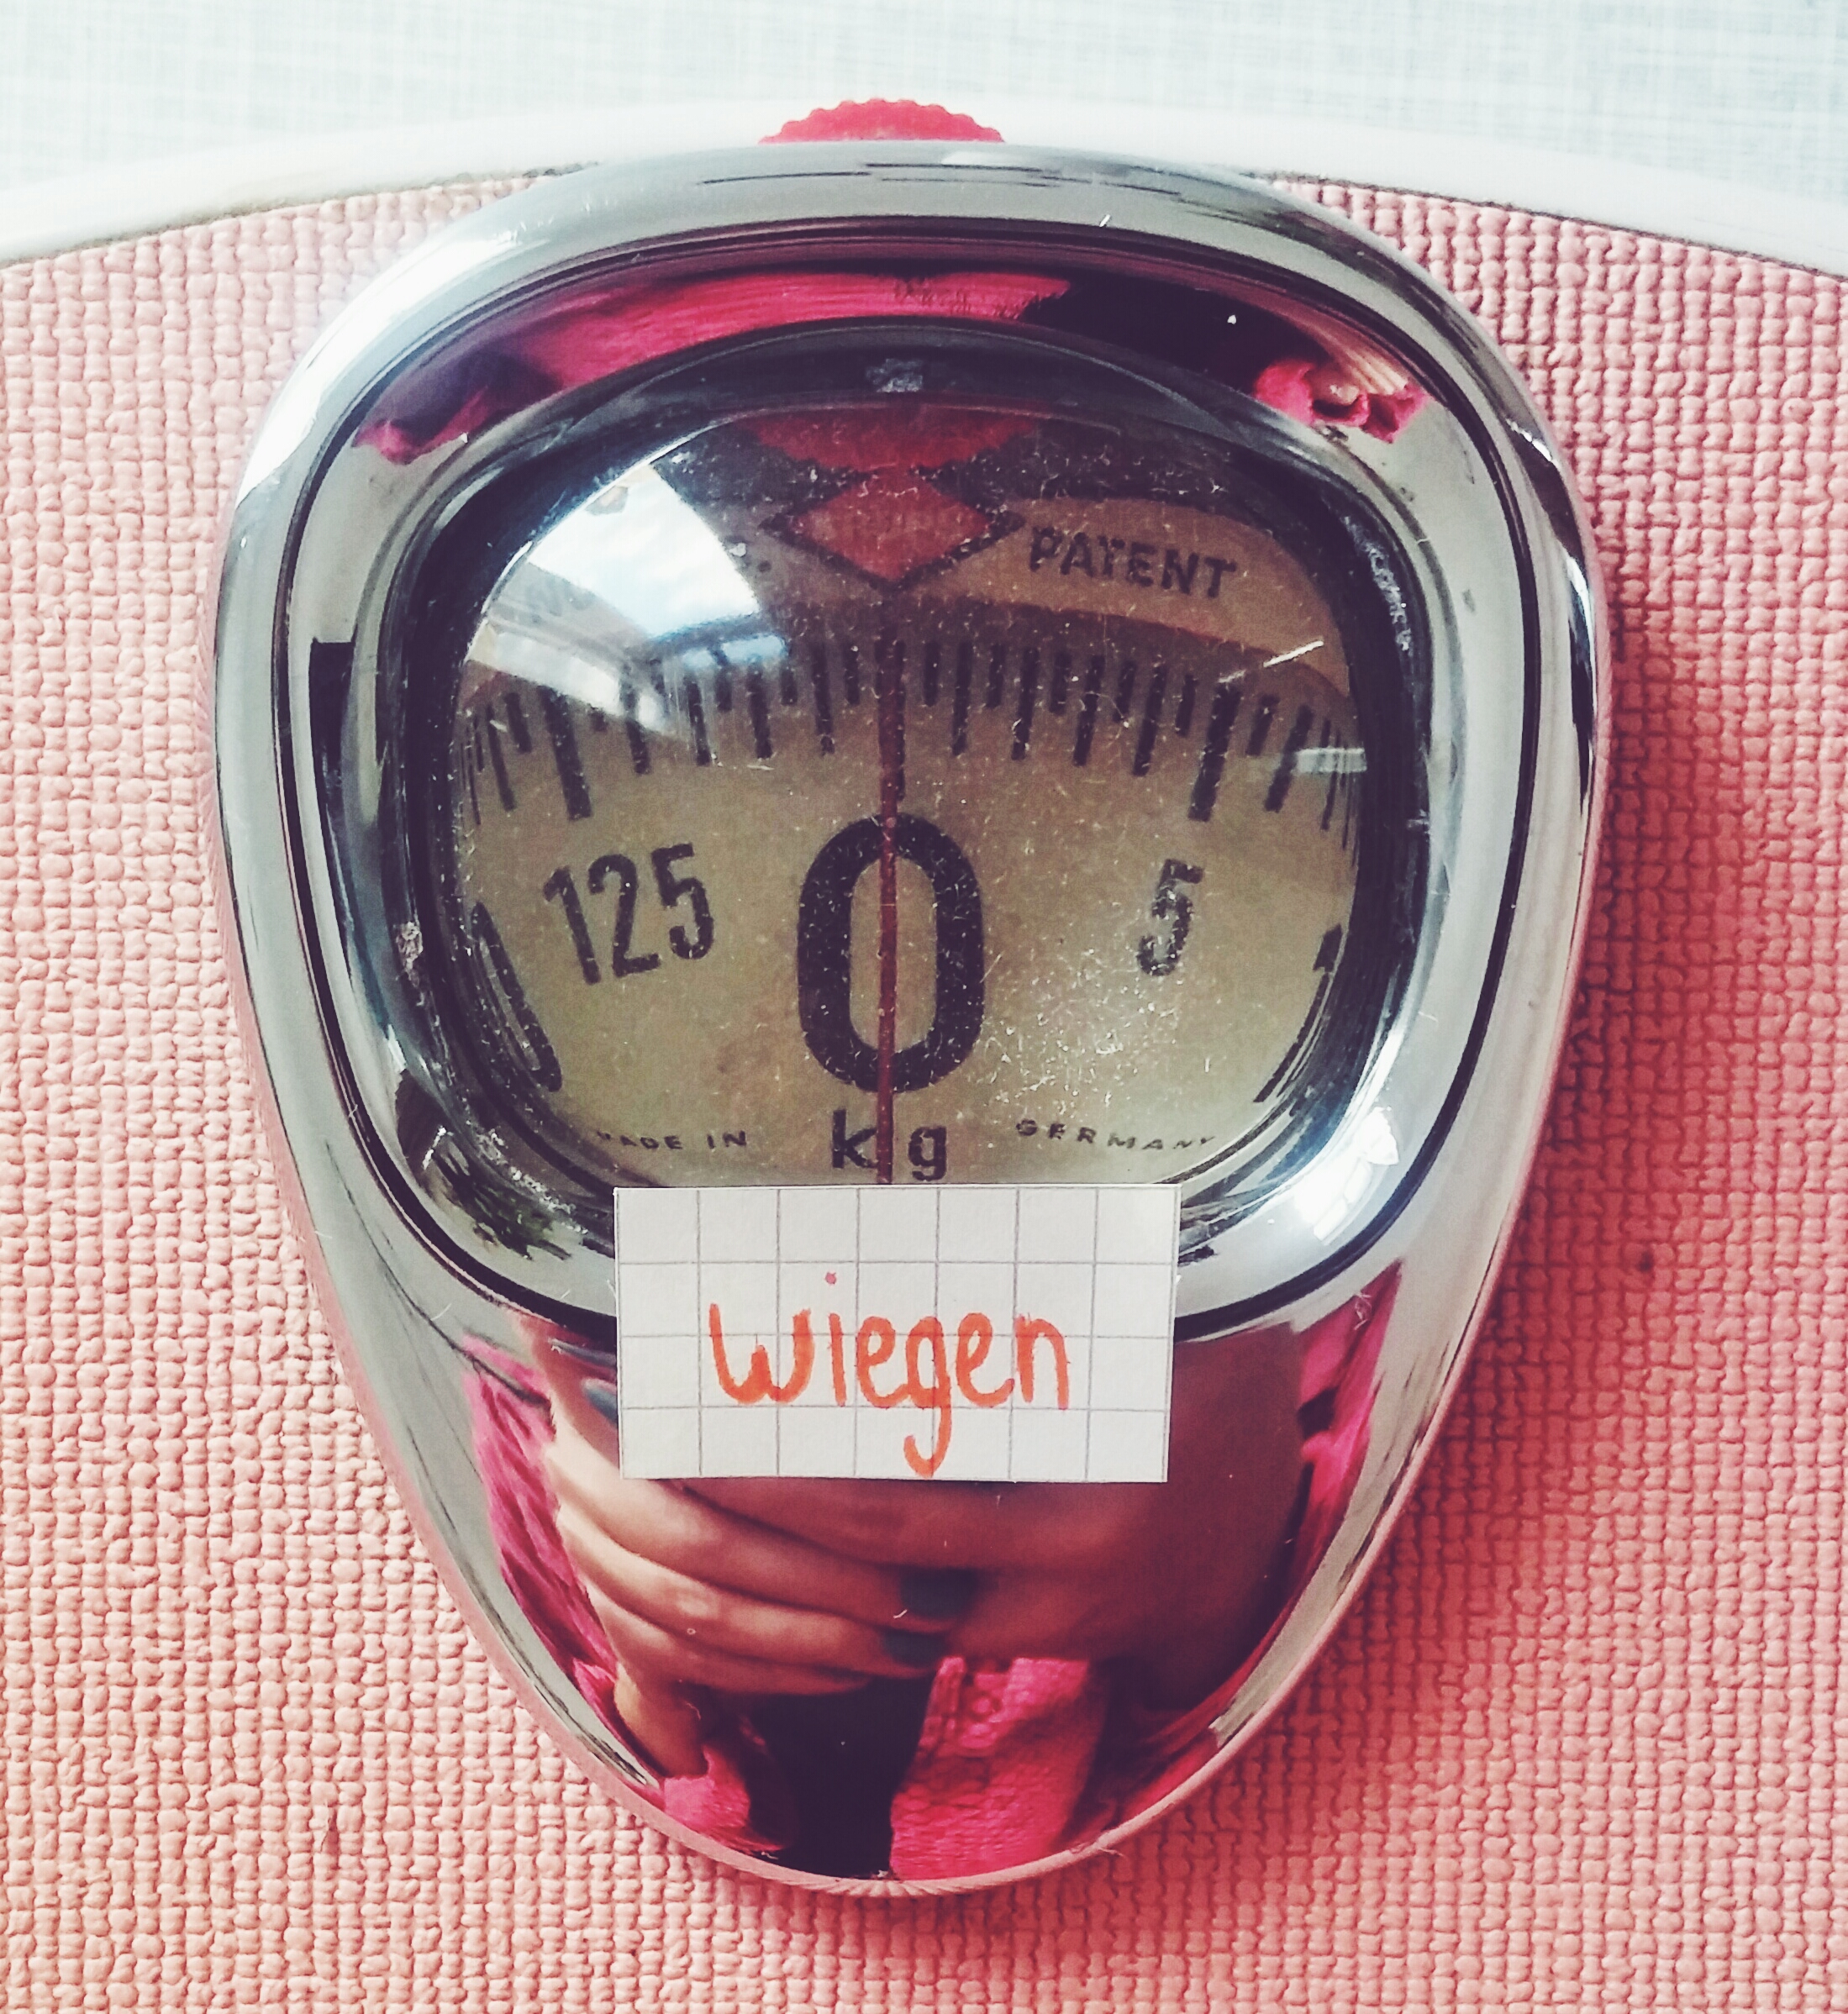 wiegen - to weigh